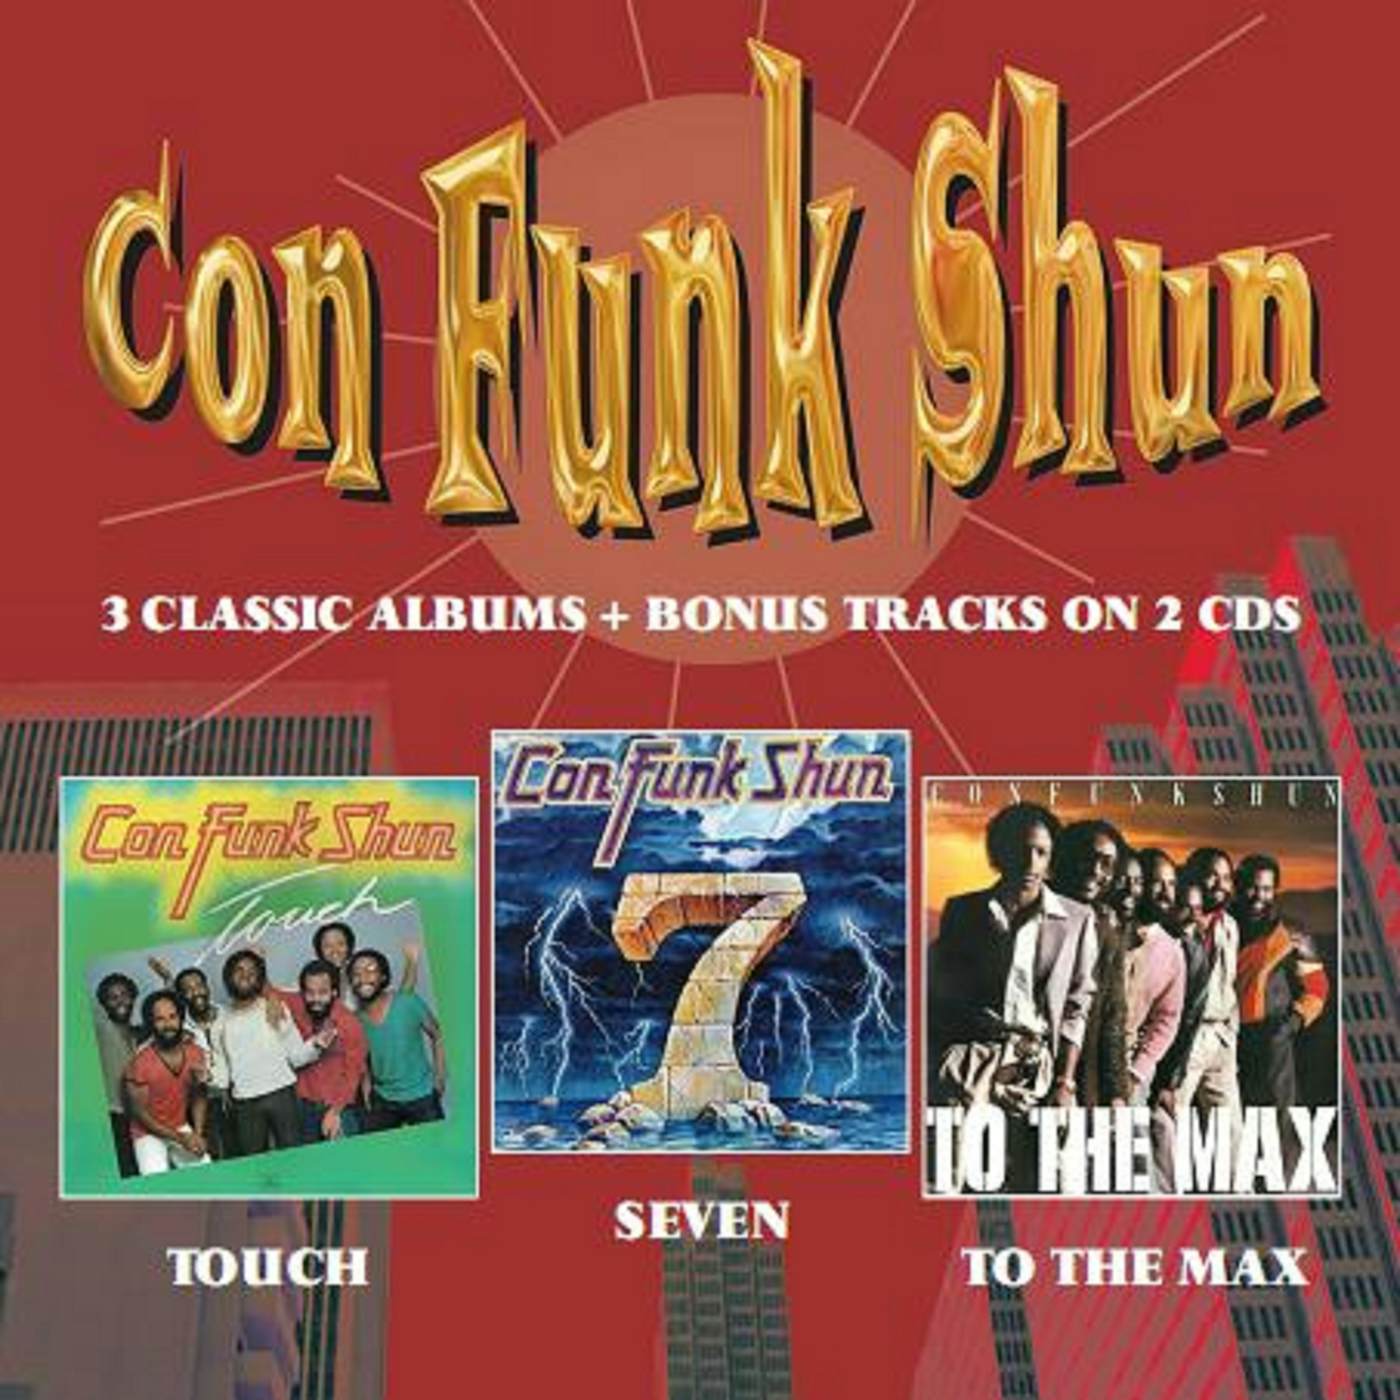 Con Funk Shun Touch/Seven/To The Max CD